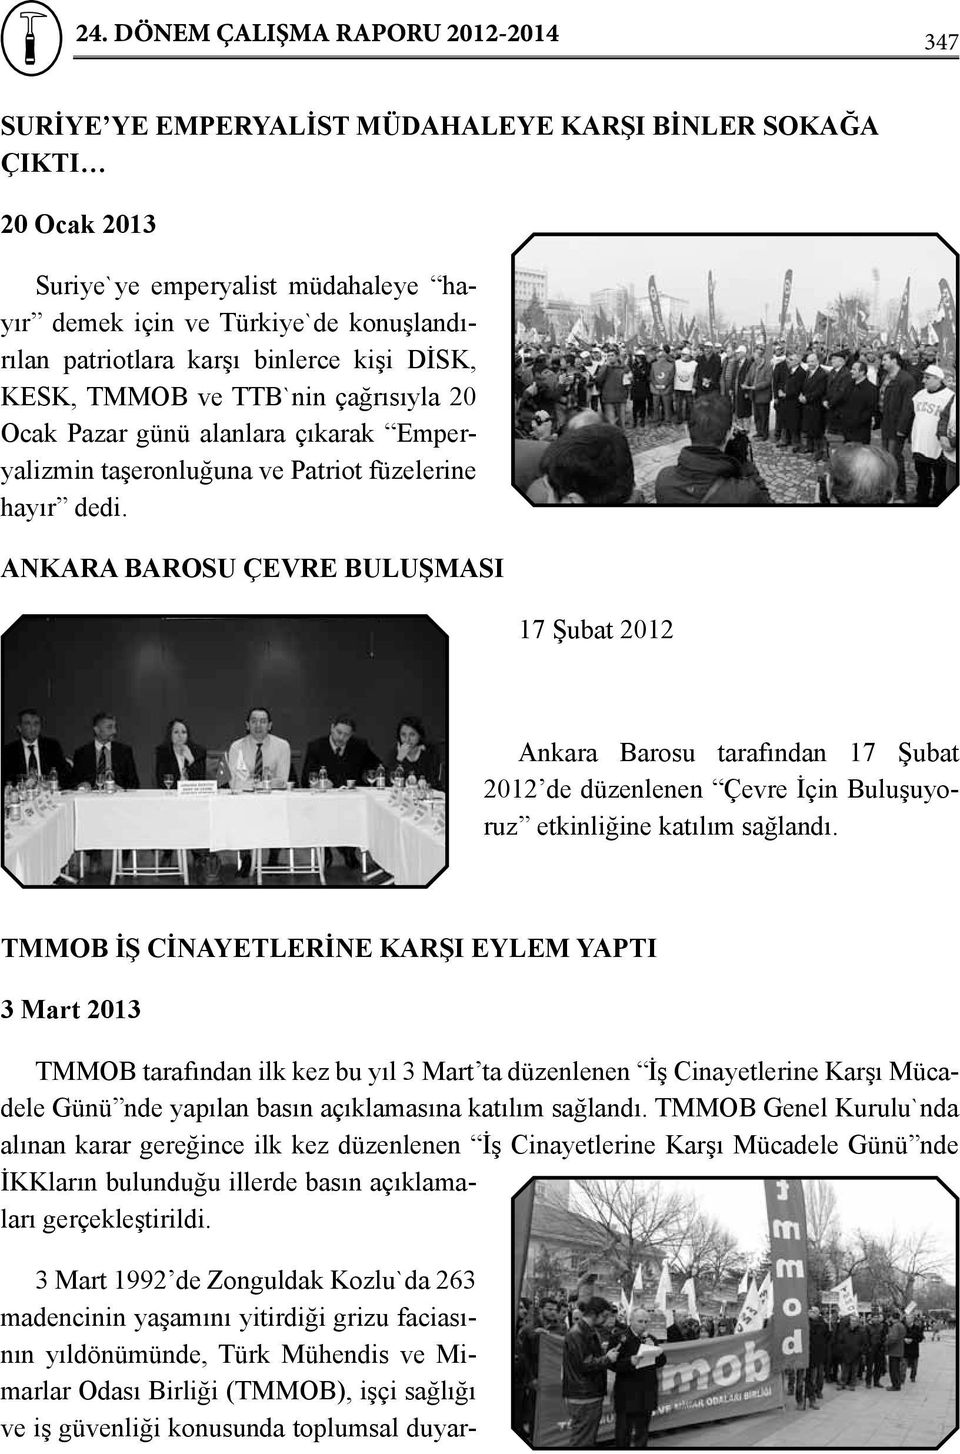 ANKARA BAROSU ÇEVRE BULUŞMASI 17 Şubat 2012 Ankara Barosu tarafından 17 Şubat 2012 de düzenlenen Çevre İçin Buluşuyoruz etkinliğine katılım sağlandı.